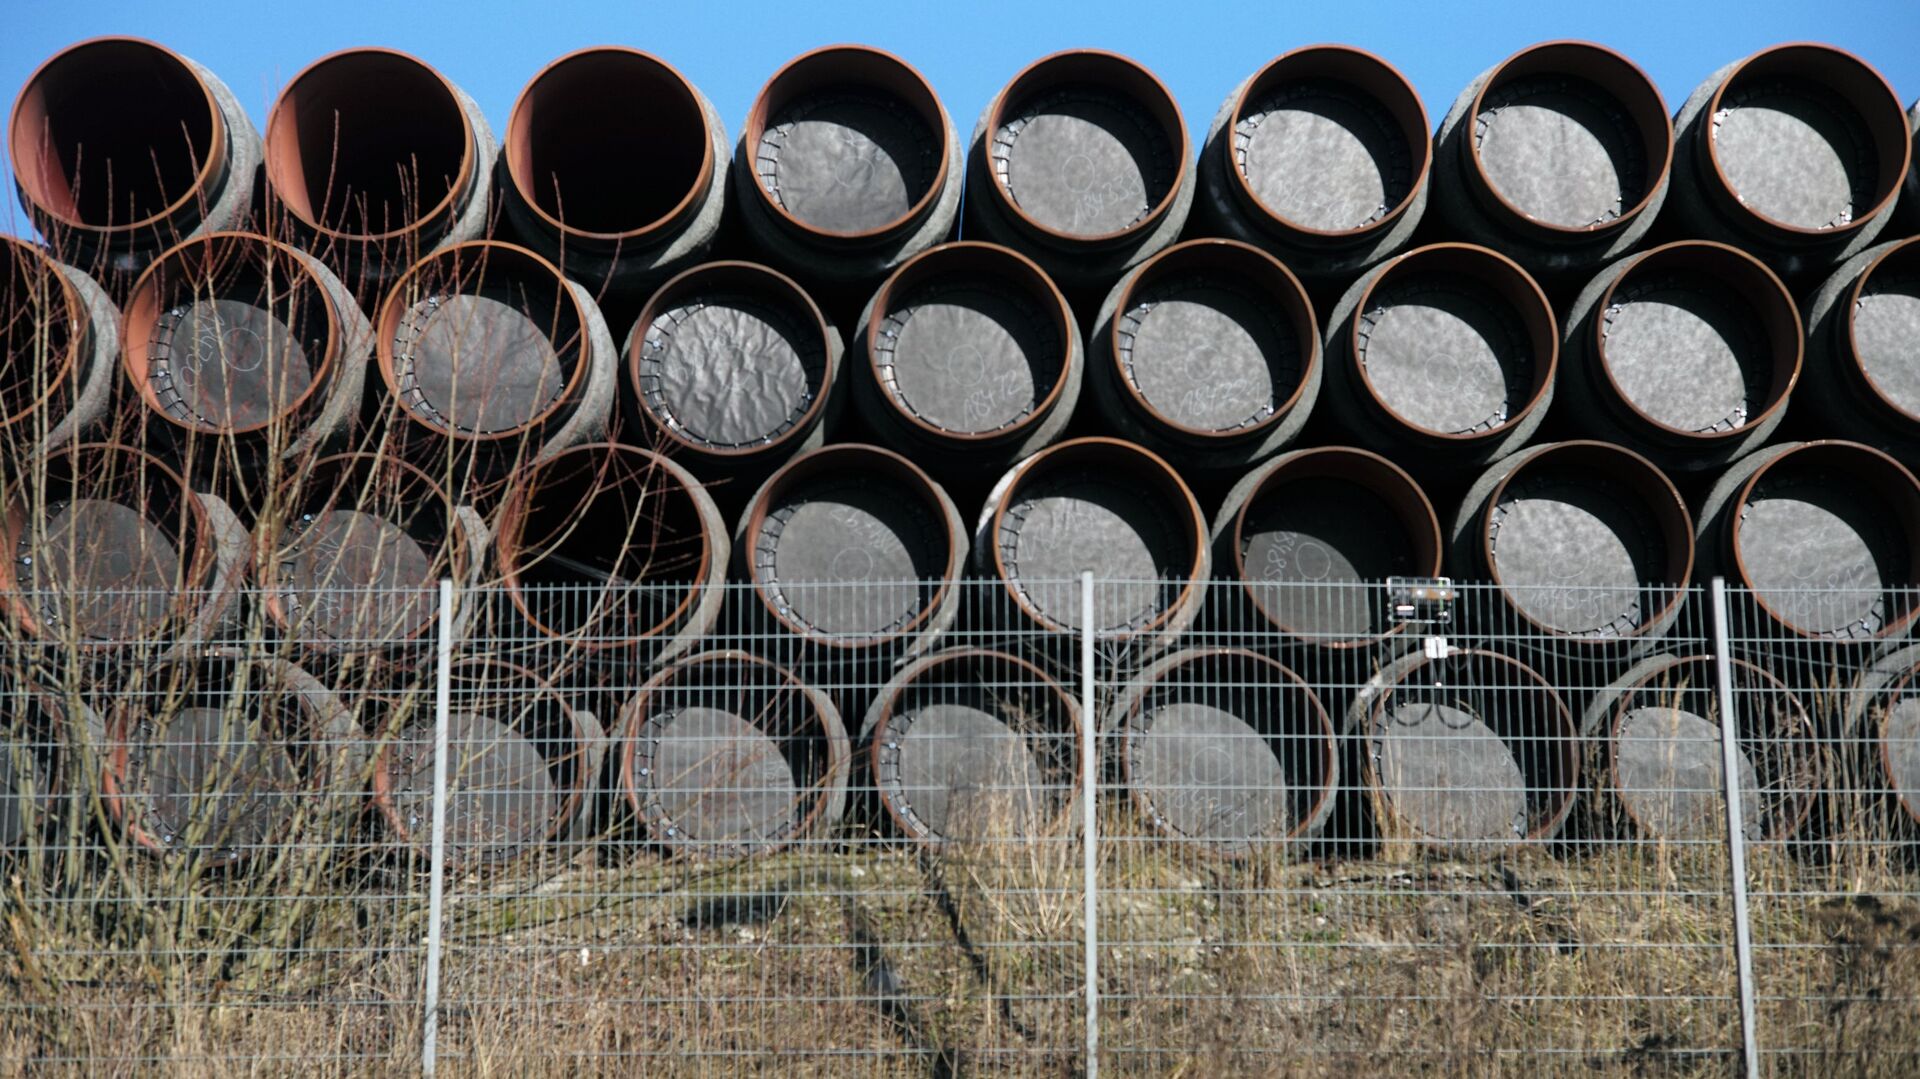 Склад труб для строительства газопровода Северный поток - 2 в порту города Засниц в Германии - Sputnik Латвия, 1920, 17.05.2021